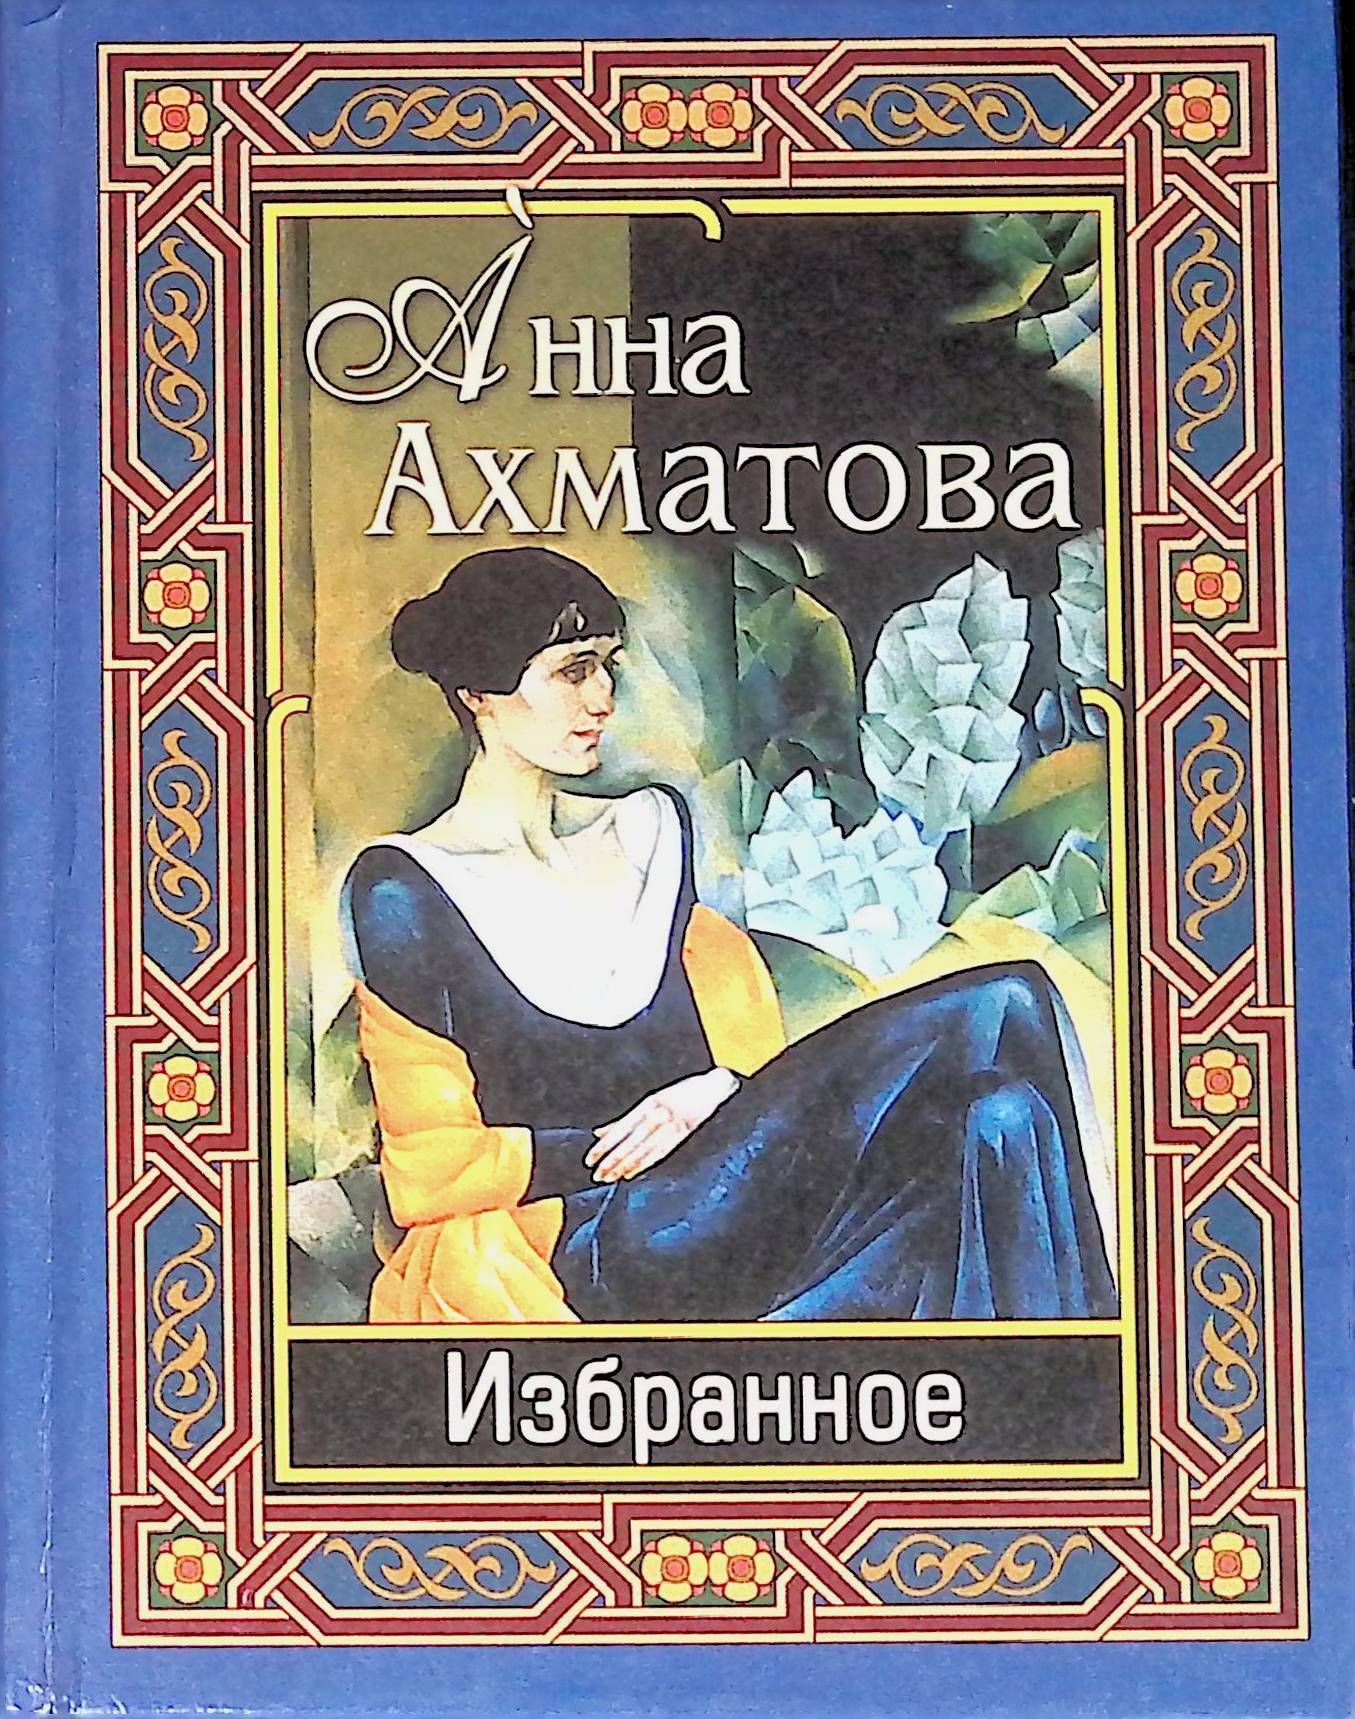 Ахматова сборник стихотворений. Обложки произведений Анны Ахматовой.